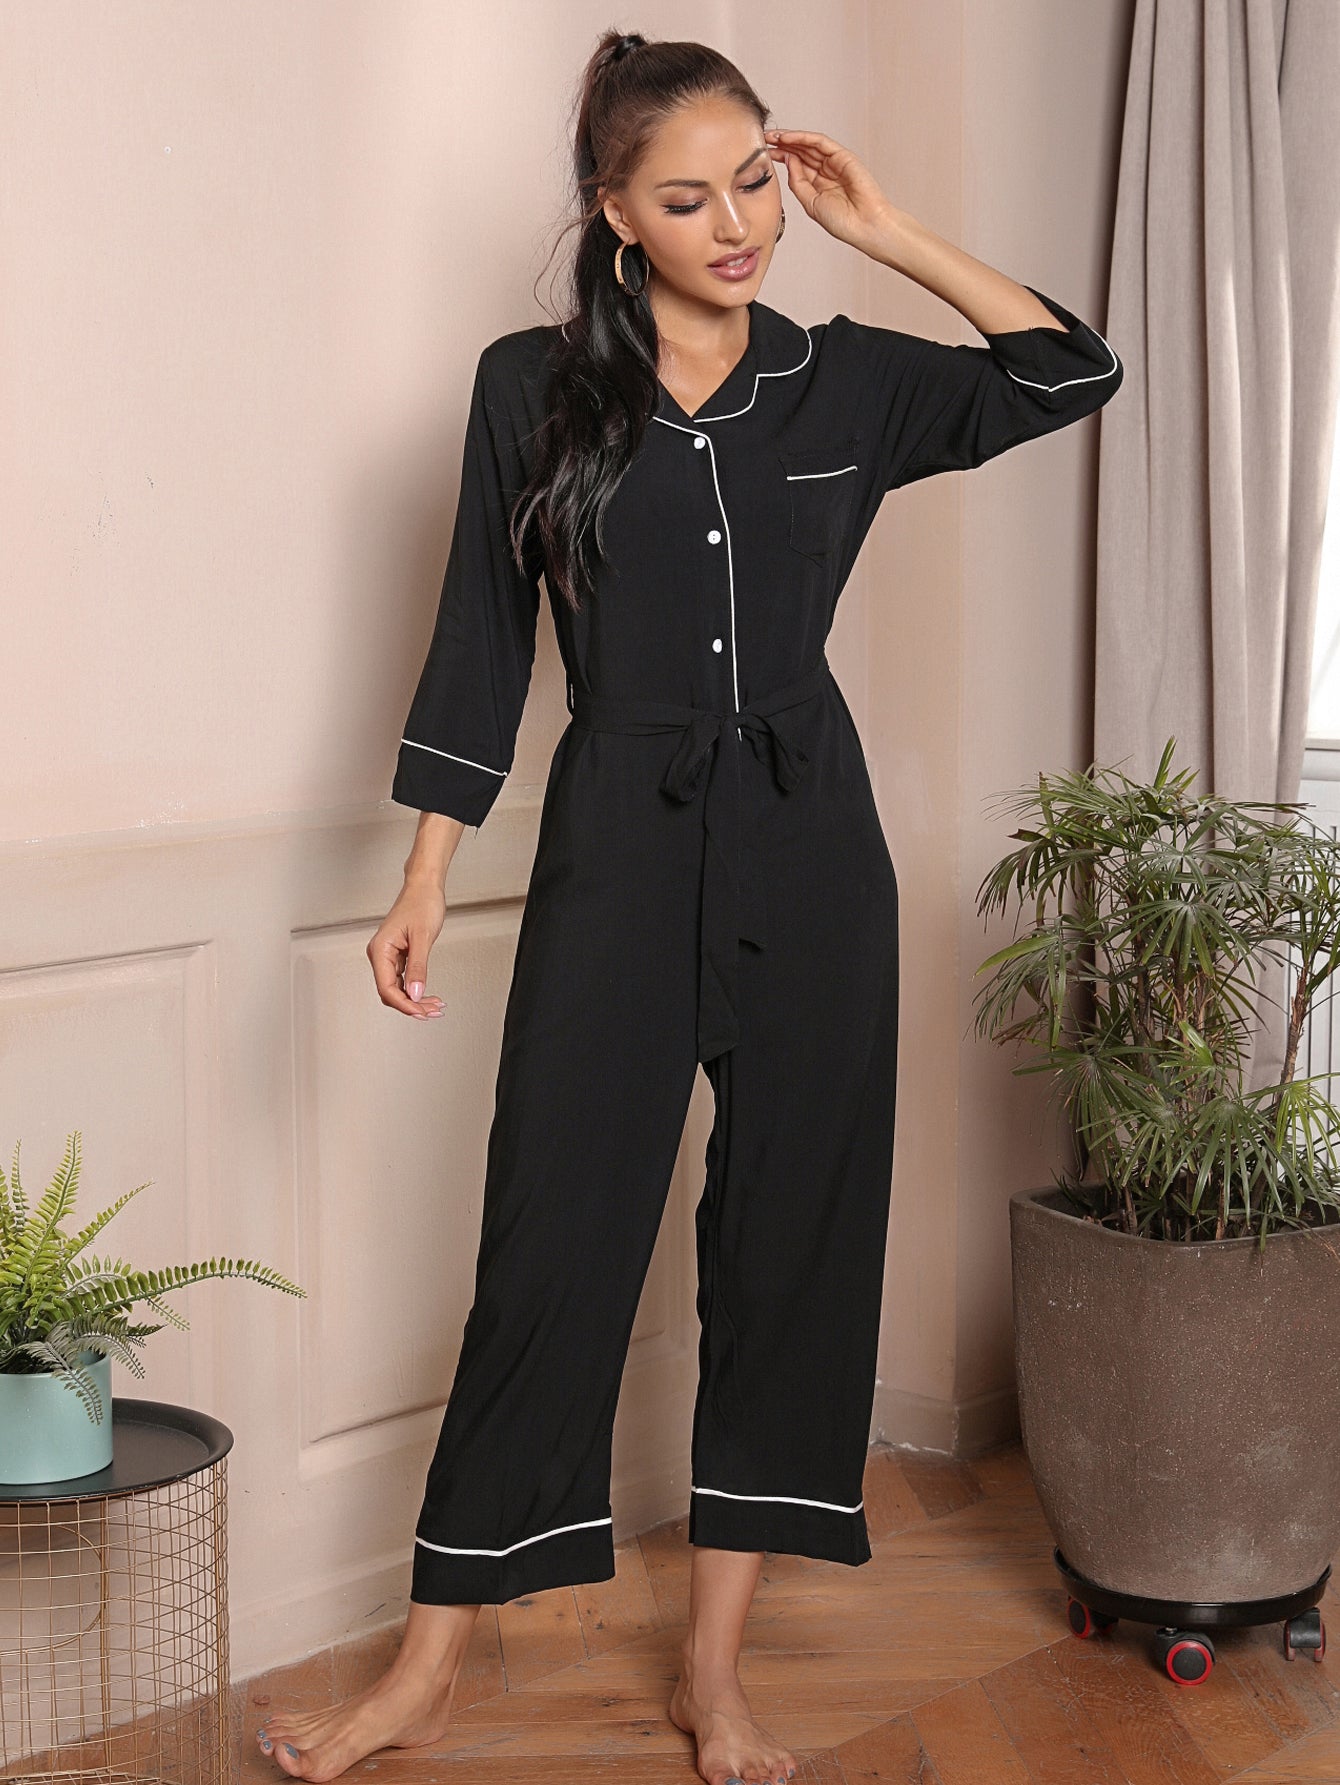 Women's Jumpsuit Loungewear Soft Lightweight and Comfortable Sleepwear One-Piece Romper Nightwear Sai Feel